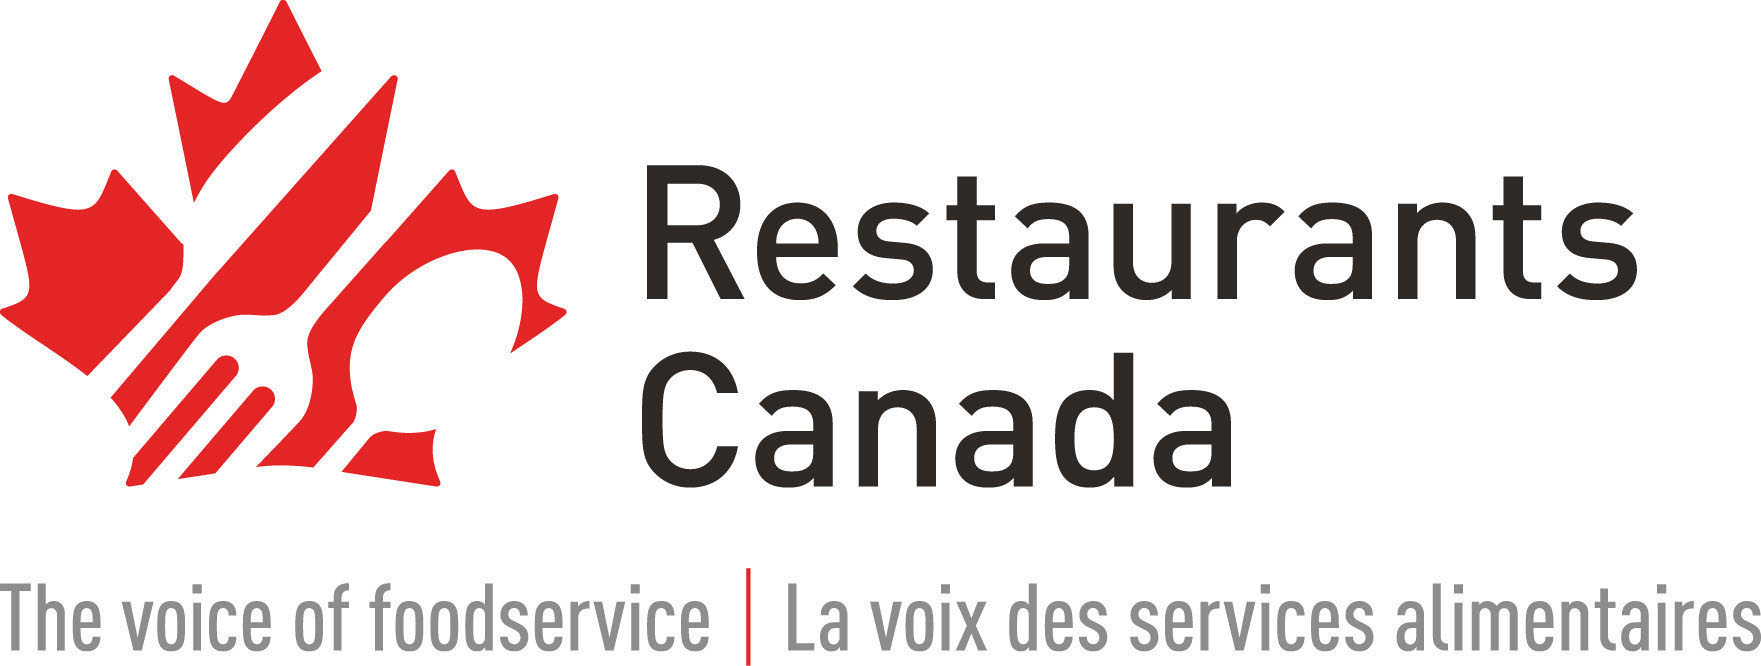 Restaurants Canada S